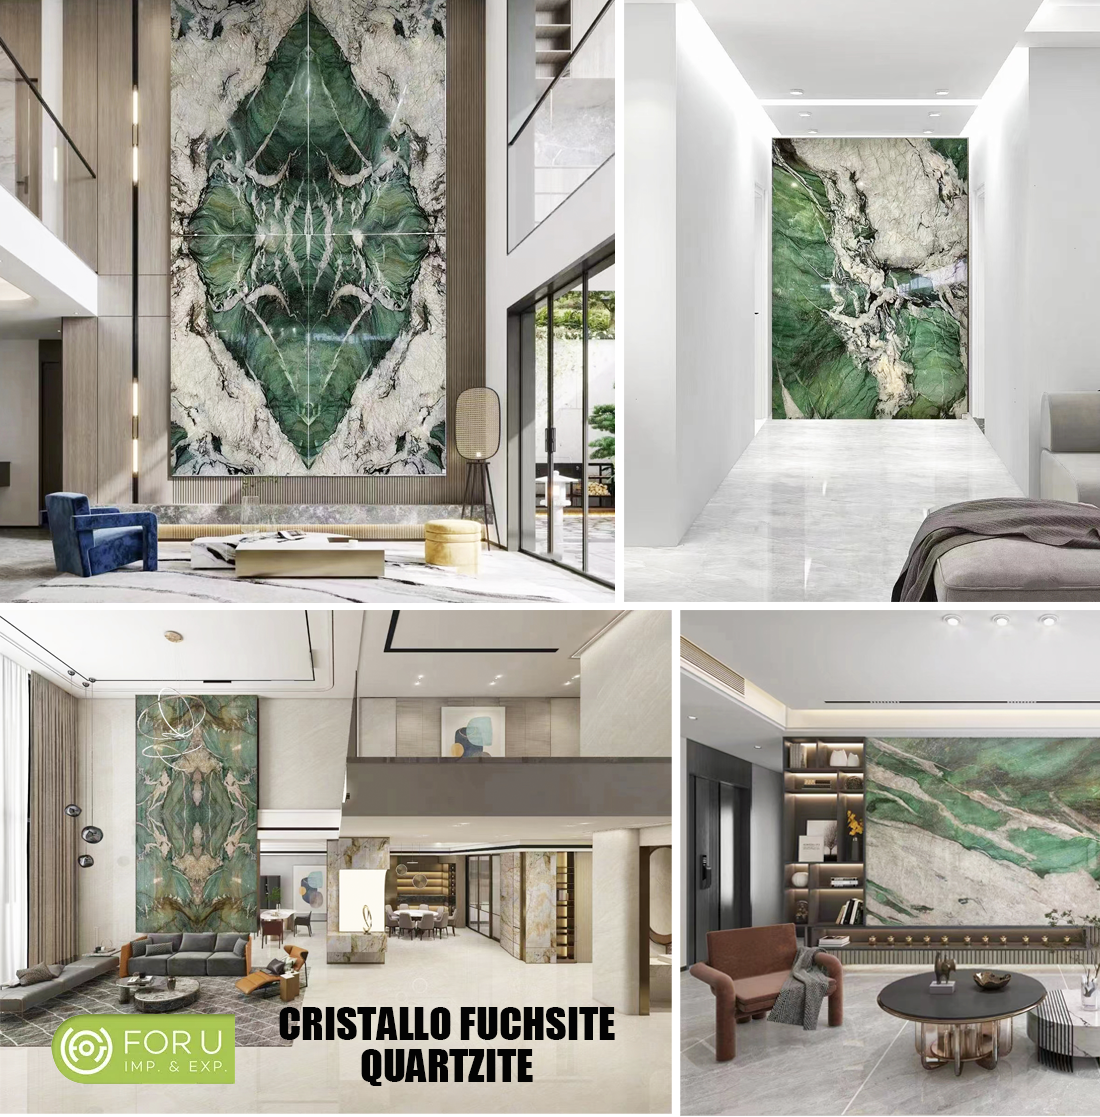 Cristallo Fuchsite Quartzite Luxury Wall Projects FOR U STONE